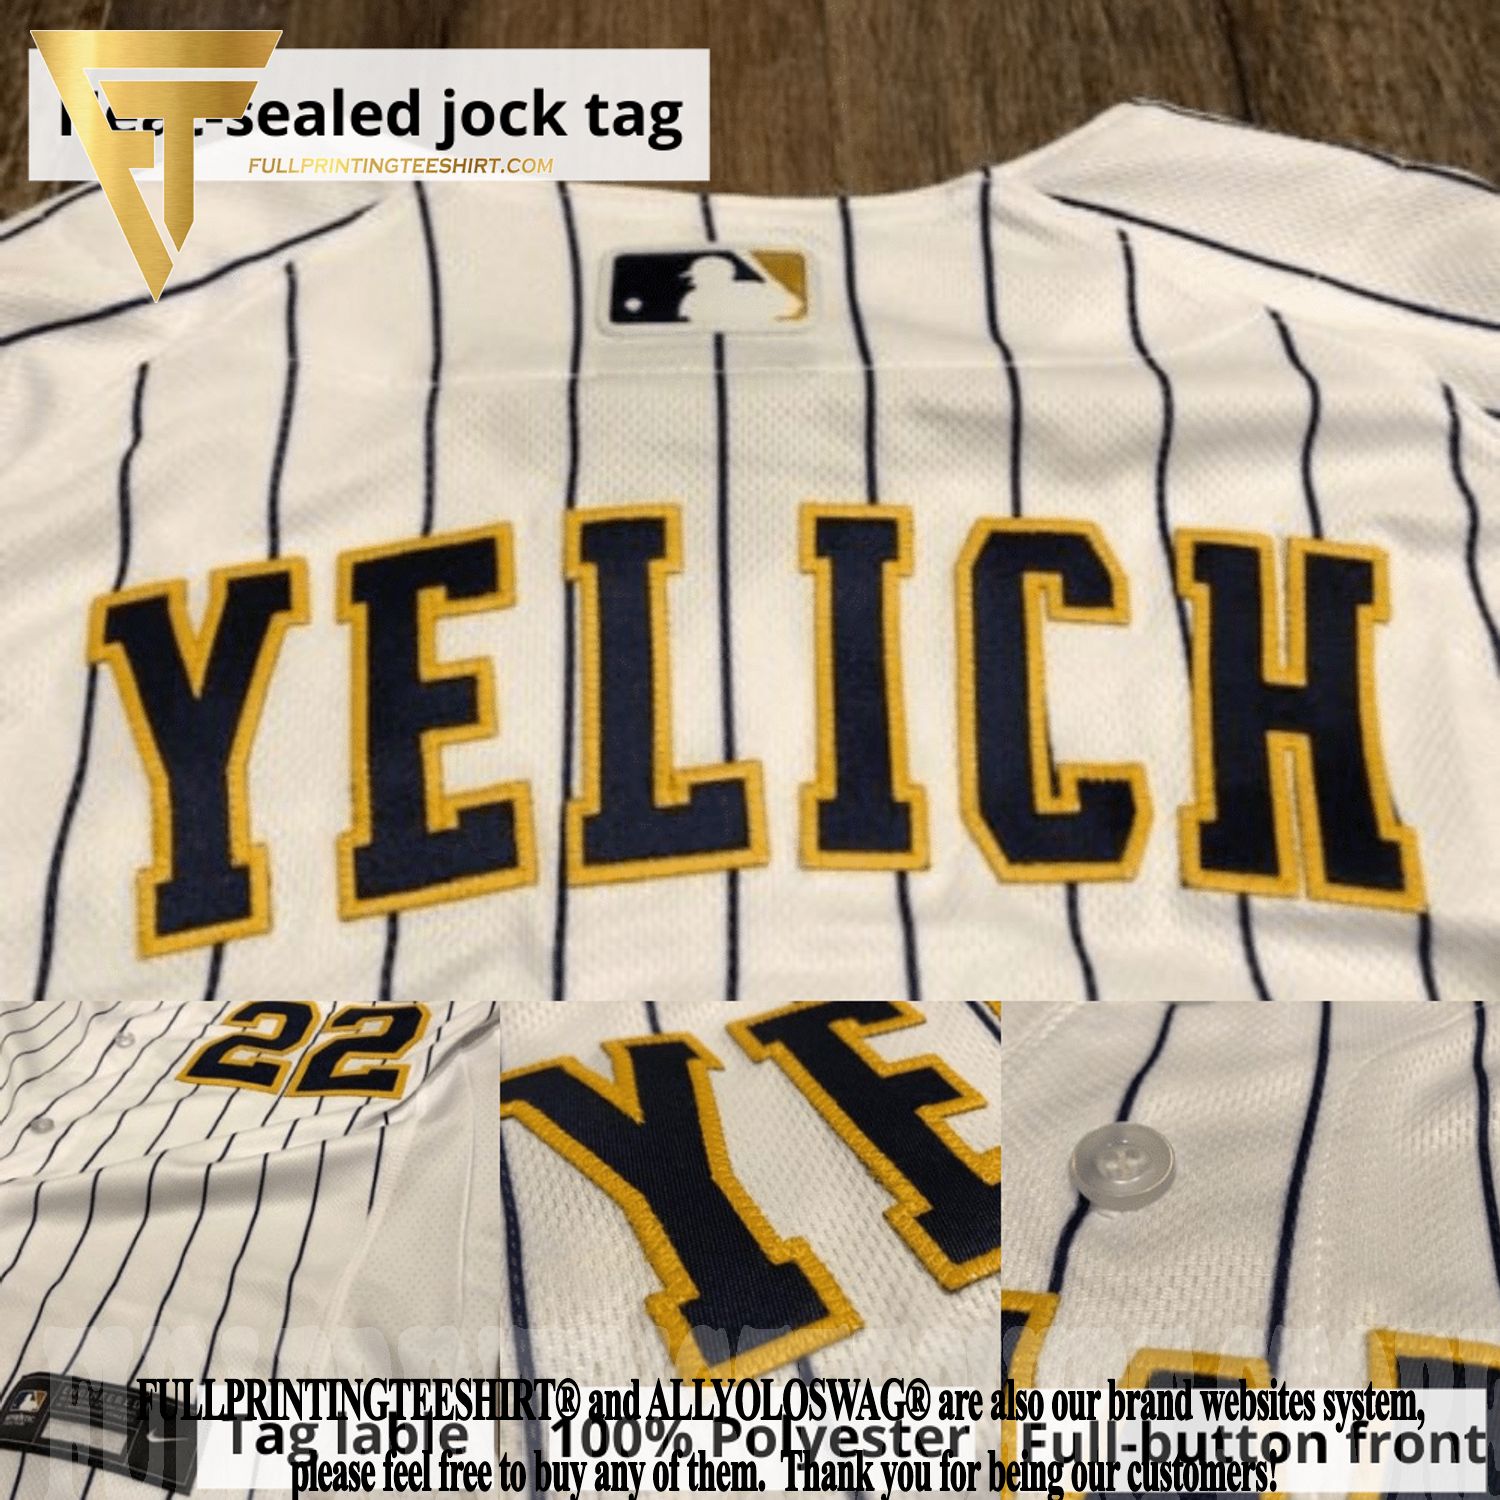 Robin Yount MLB Fan Jerseys for sale